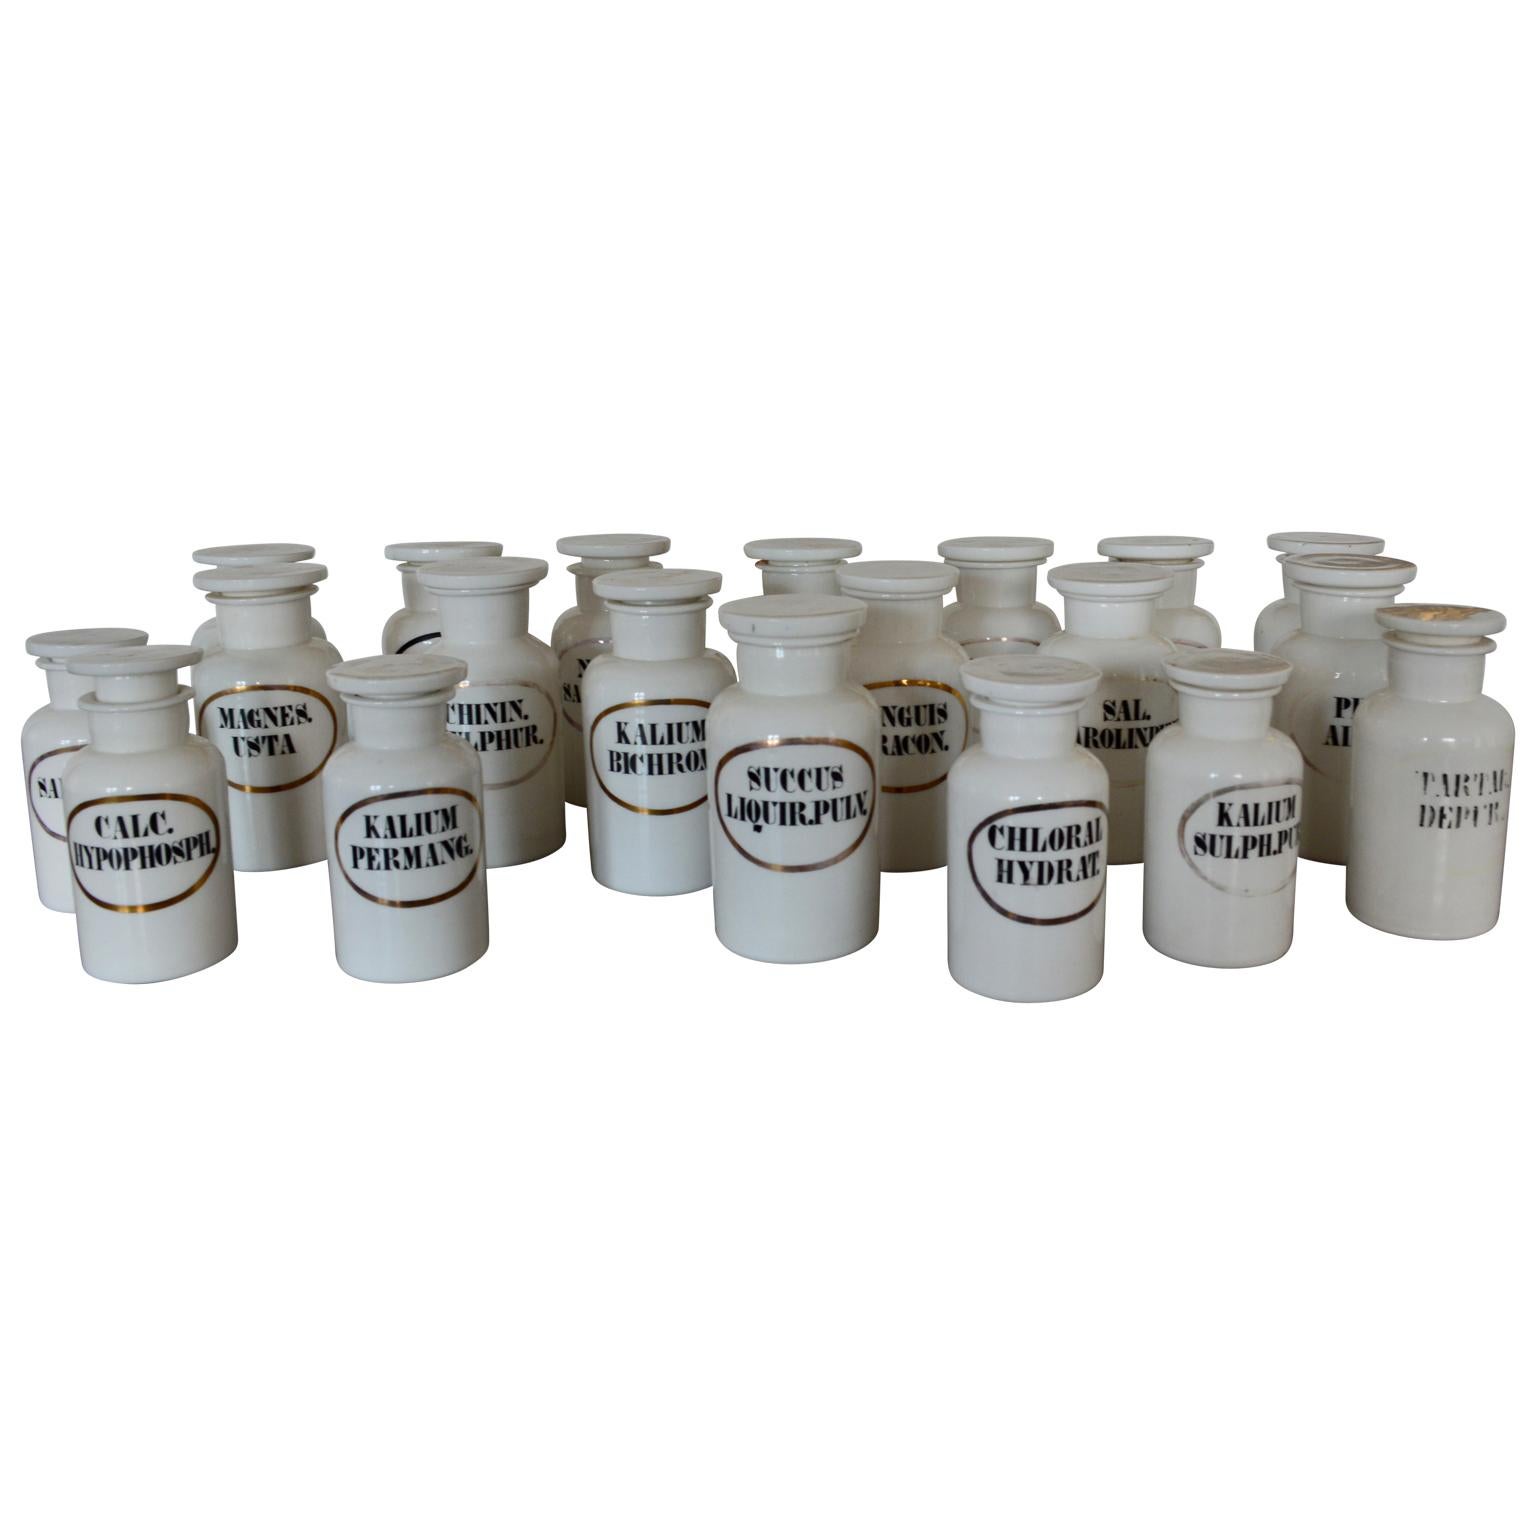 Collection de 20 pots d'apothicaire en opaline du 19ème siècle.
La collection comprend 14 grands pots et 6 petits pots.